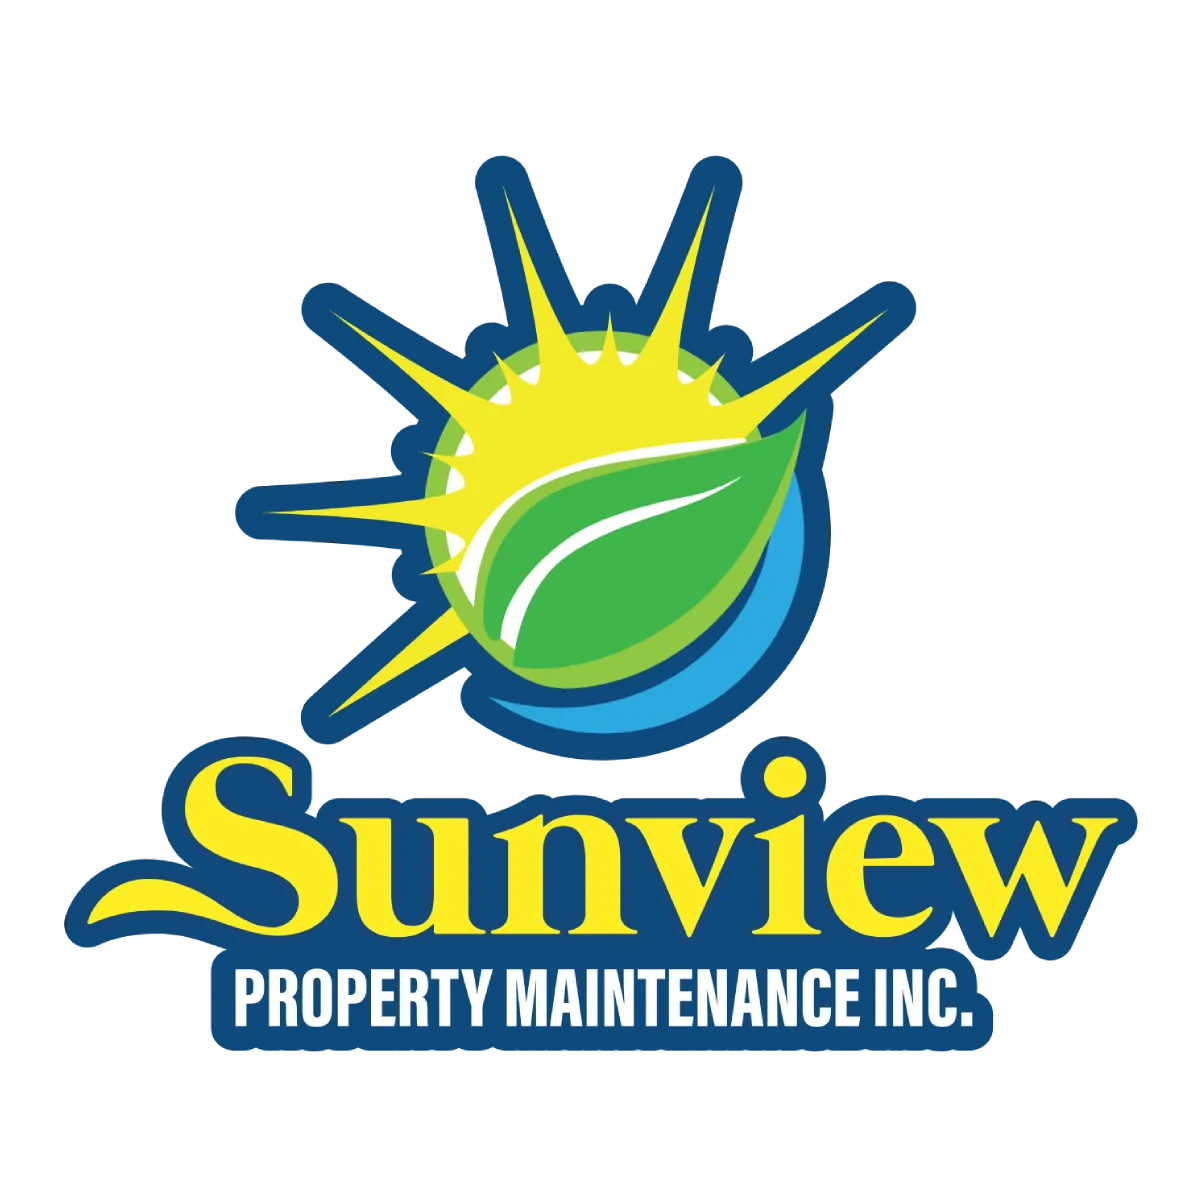 Sunview Property Maintenance - Logo - Large